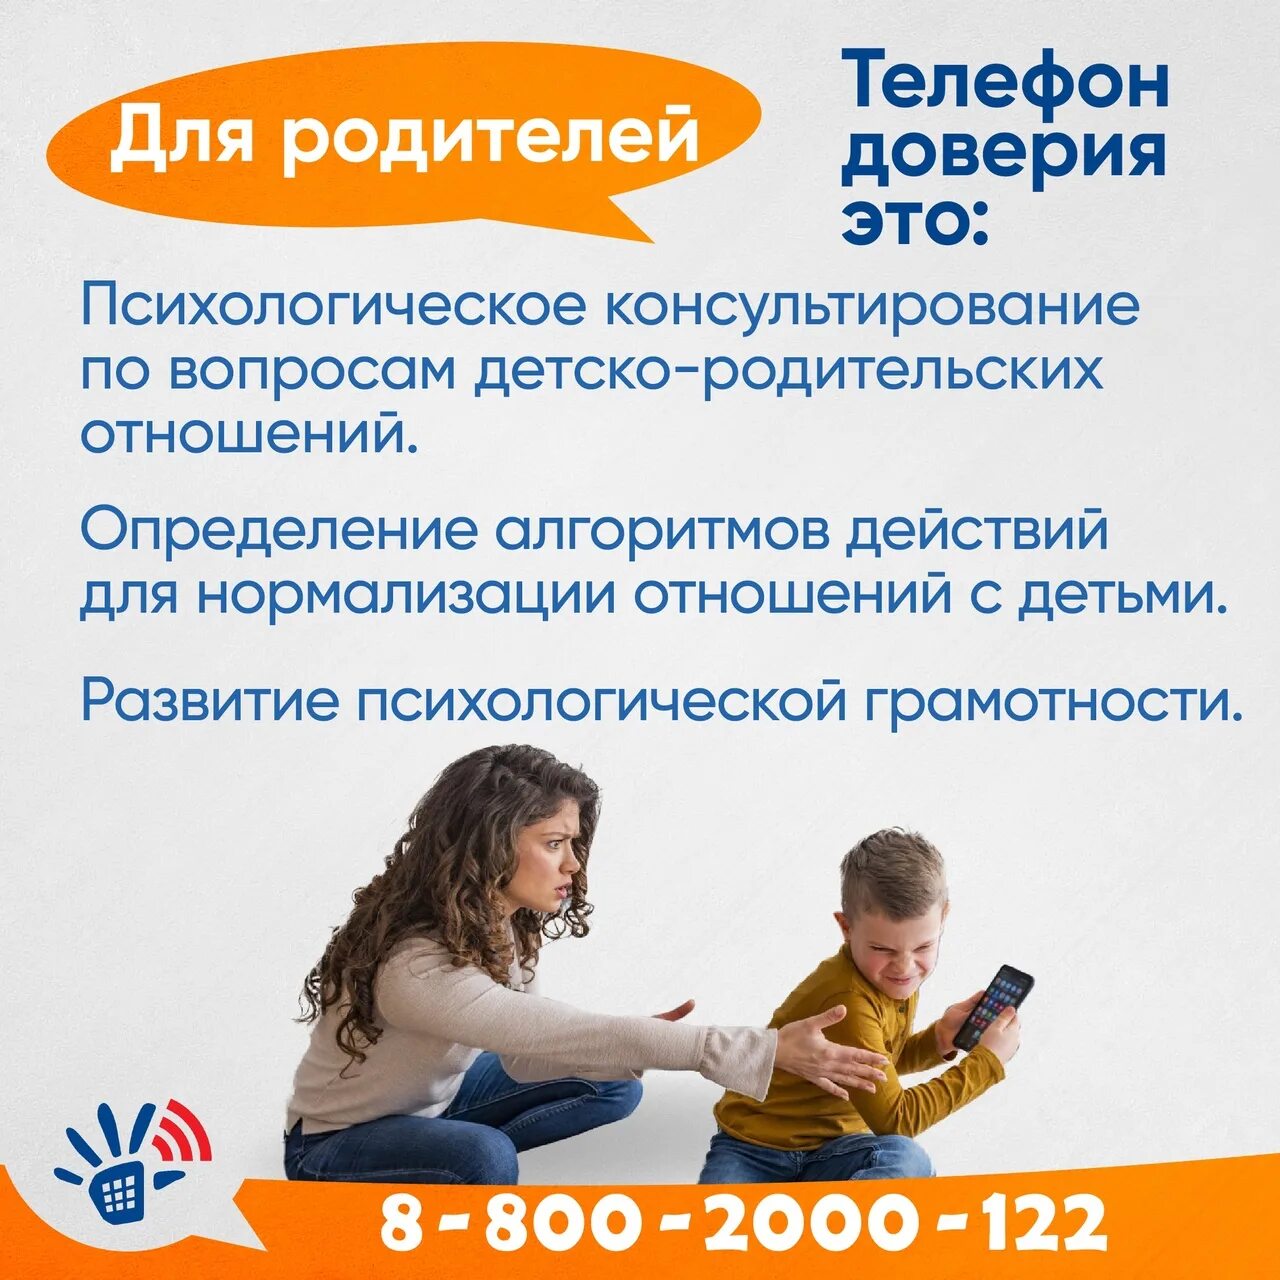 Телефон доверия. Детский телефон доверия. Телефон доверия для детей подростков и их родителей. Телефон доверия детский бесплатный.